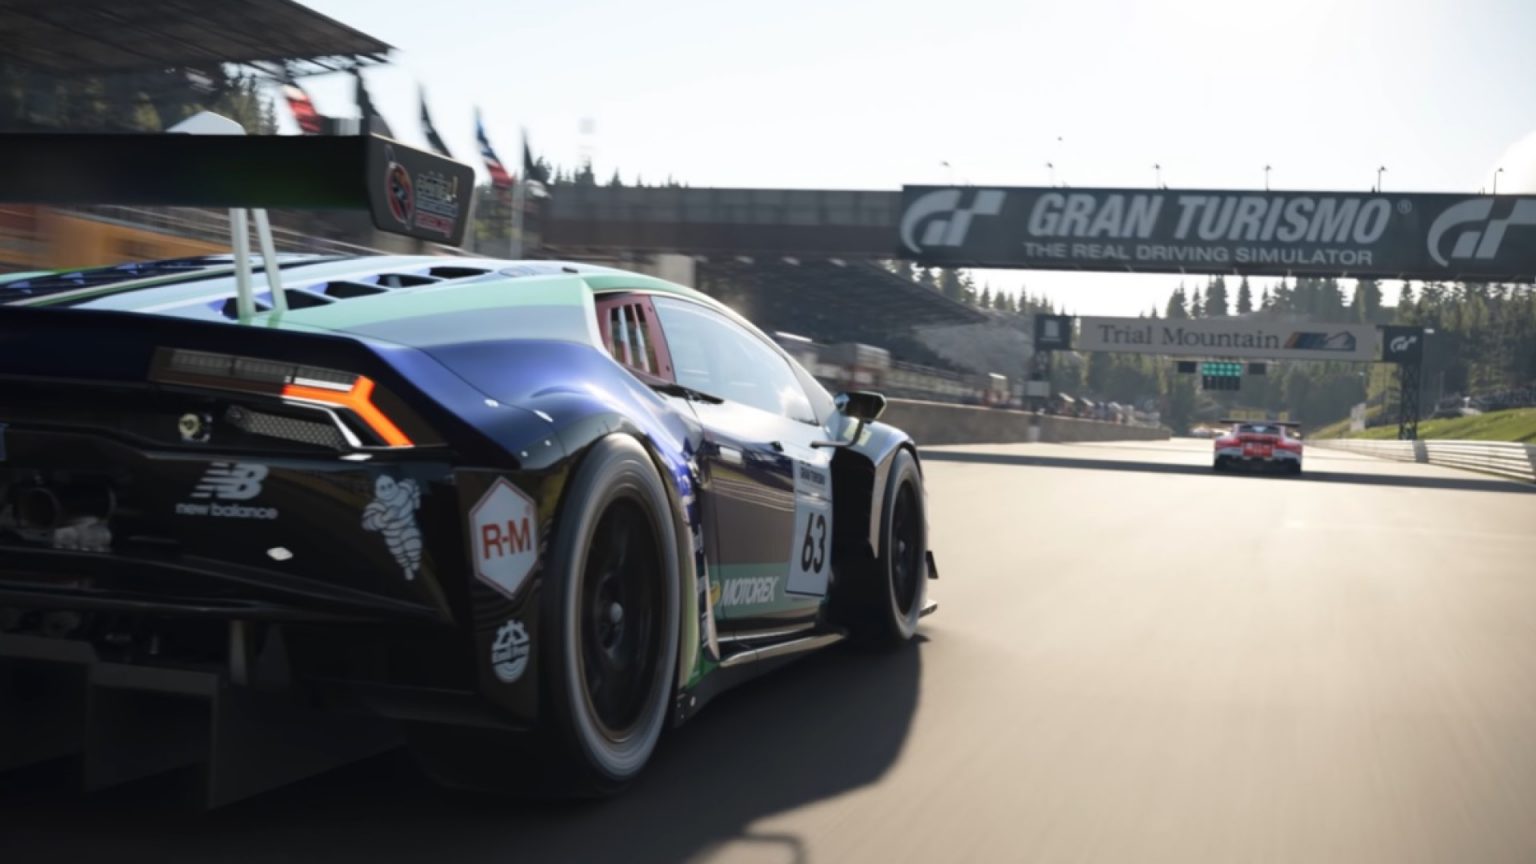 Anfang August, Gran Turismo 7 wird vier neue Autos erhalten, - sagt der Hersteller der Serie